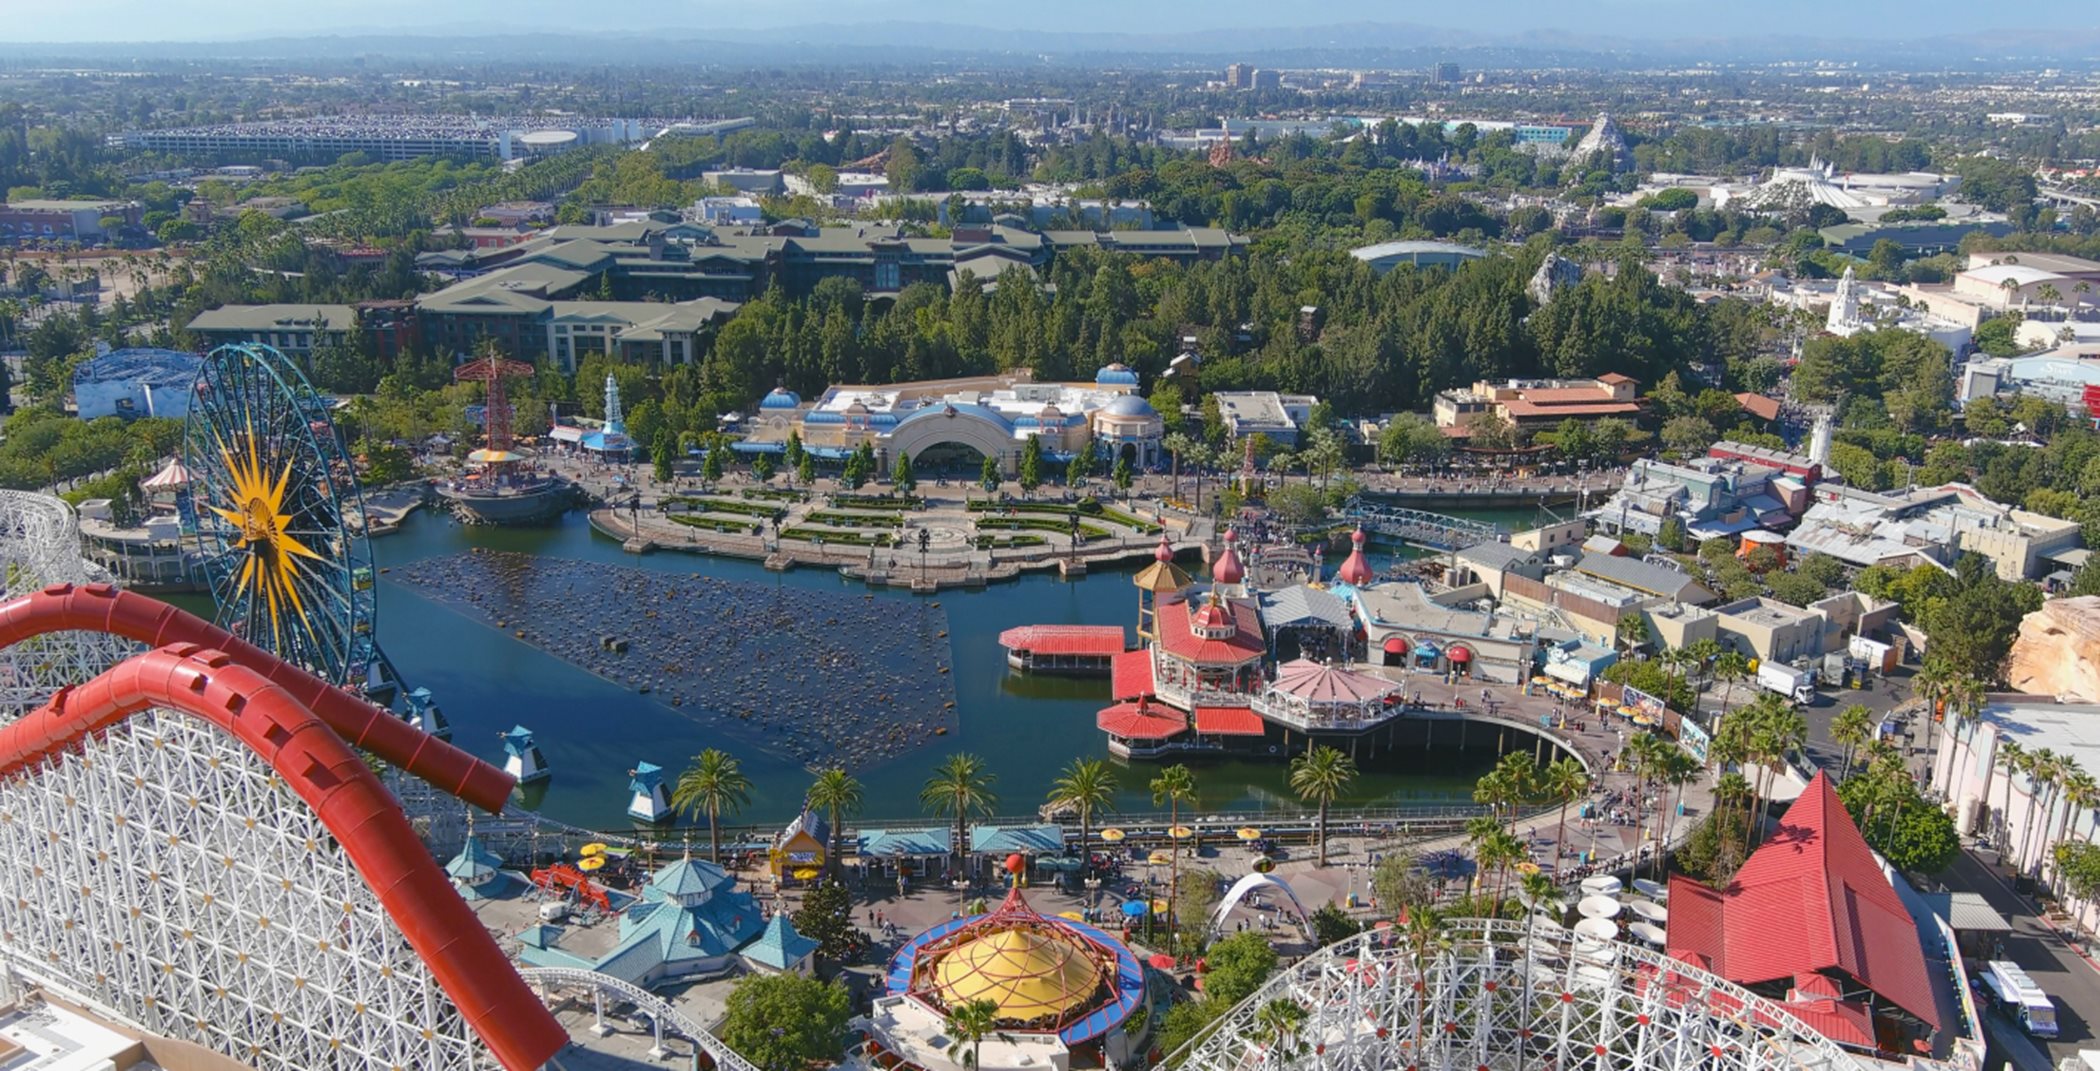 Aerial image of Disneyland